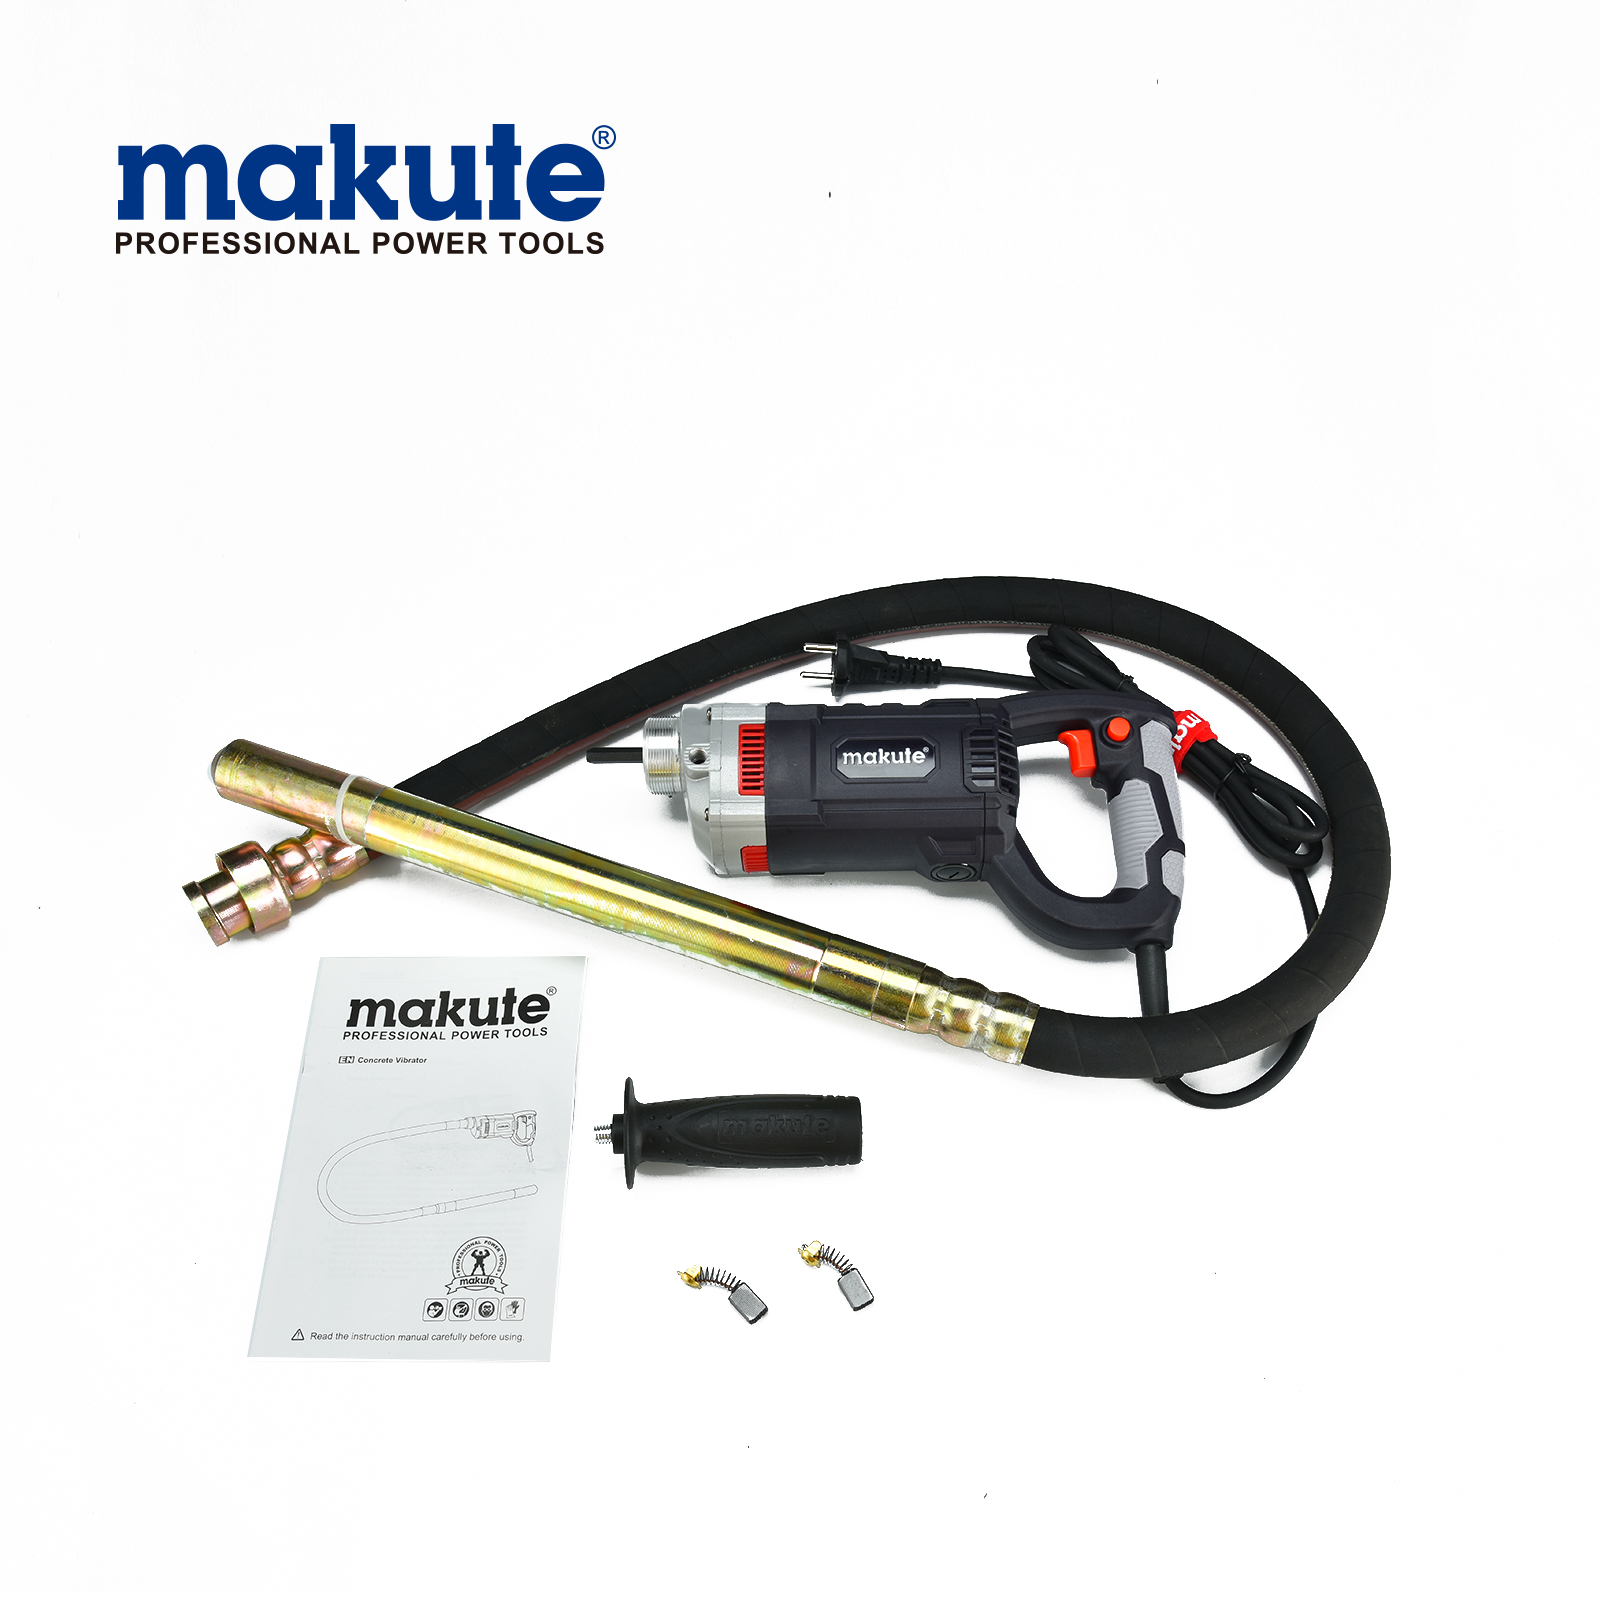 makute 35mm electric Concrete vibrator